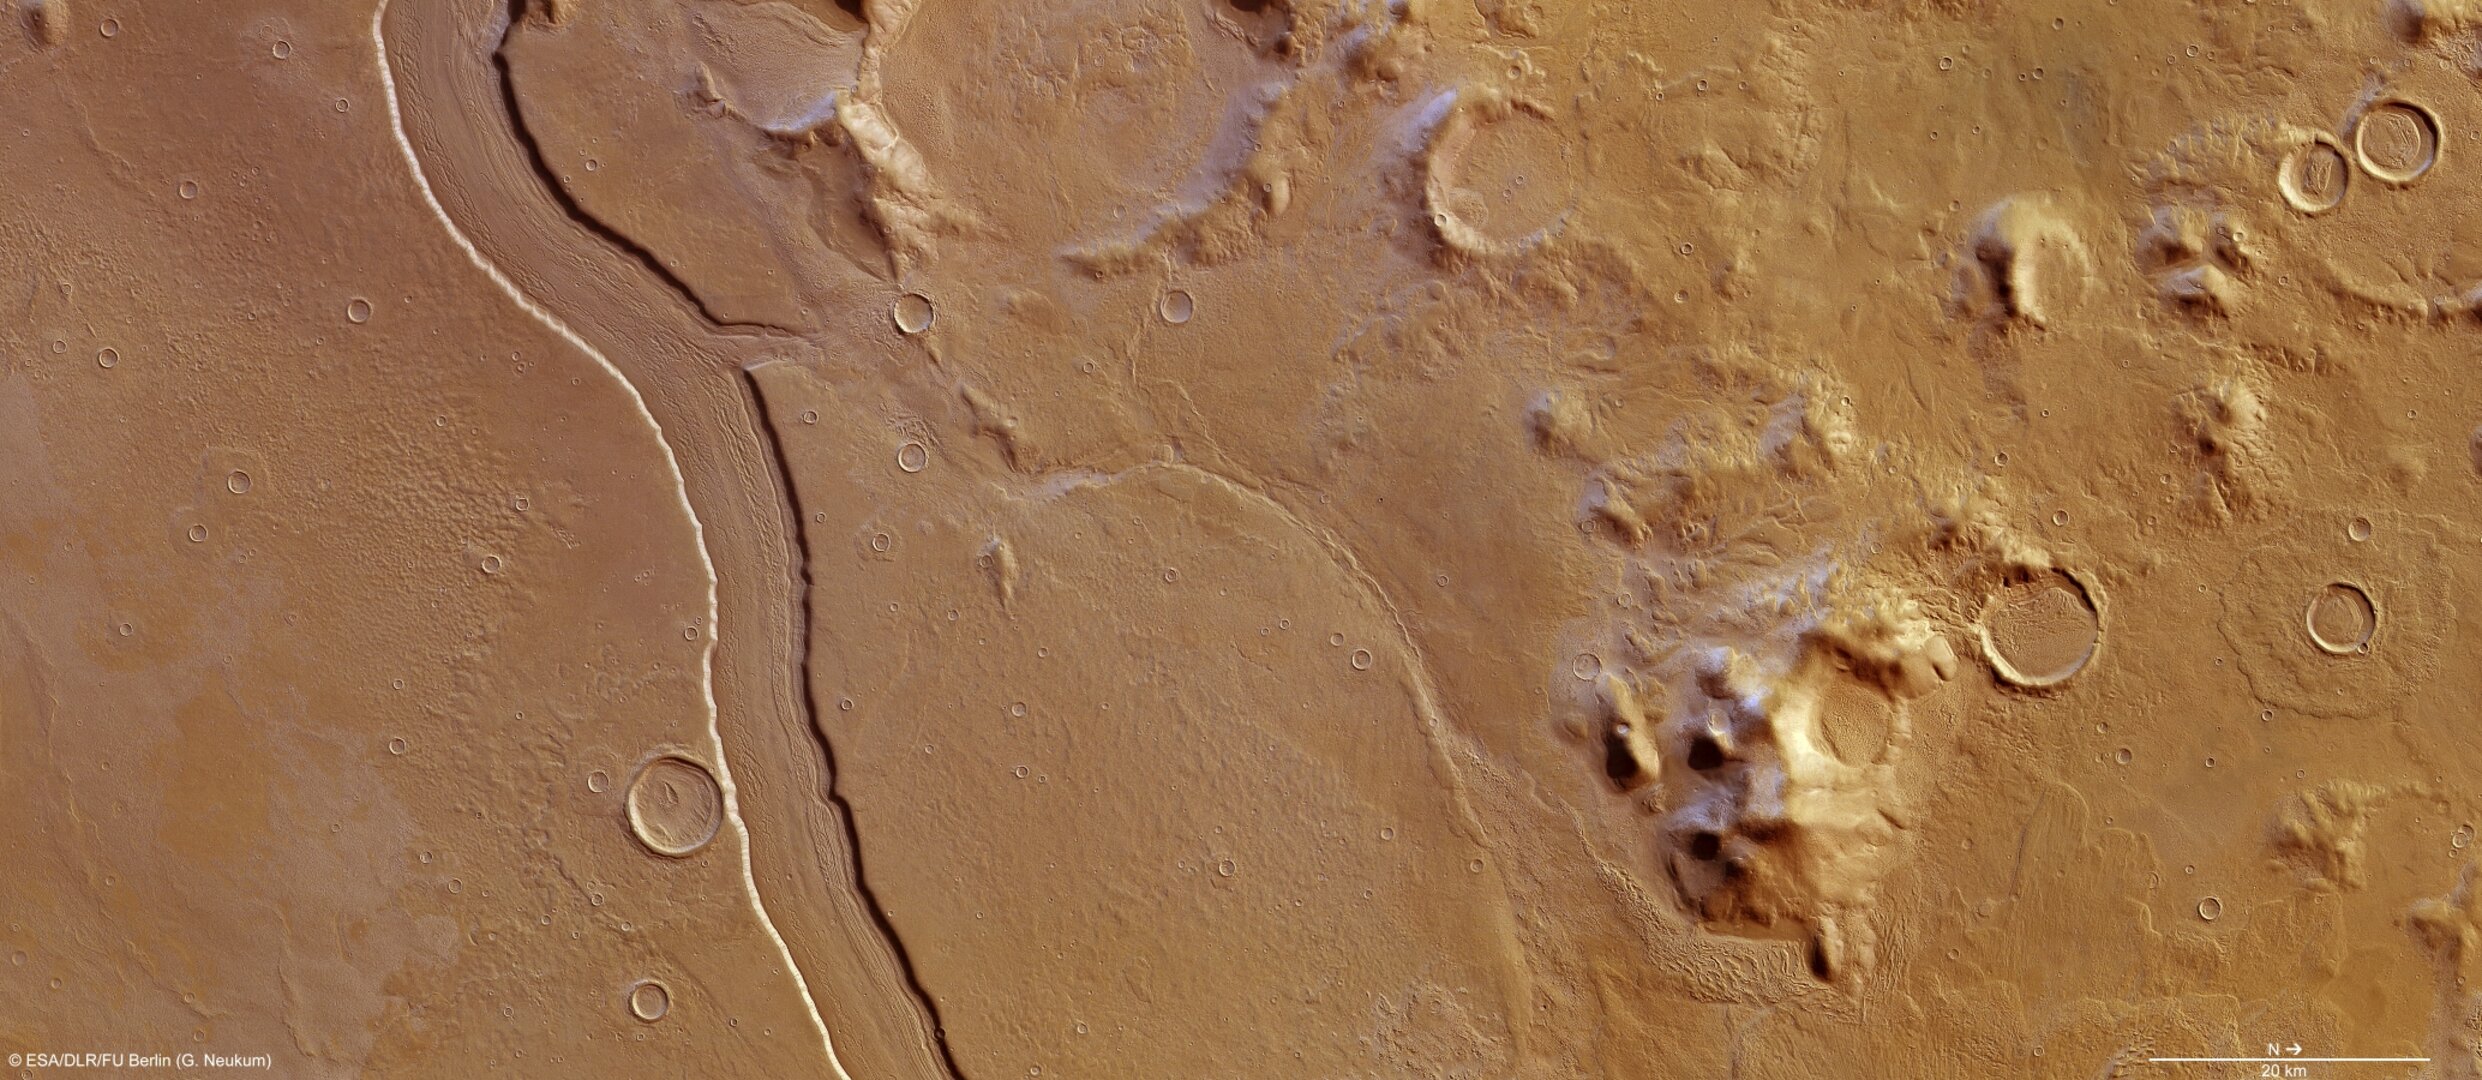 Следы на воде 5. Вода на Марсе. Моря на Марсе. Реки на Марсе. Следы водных потоков на Марсе.